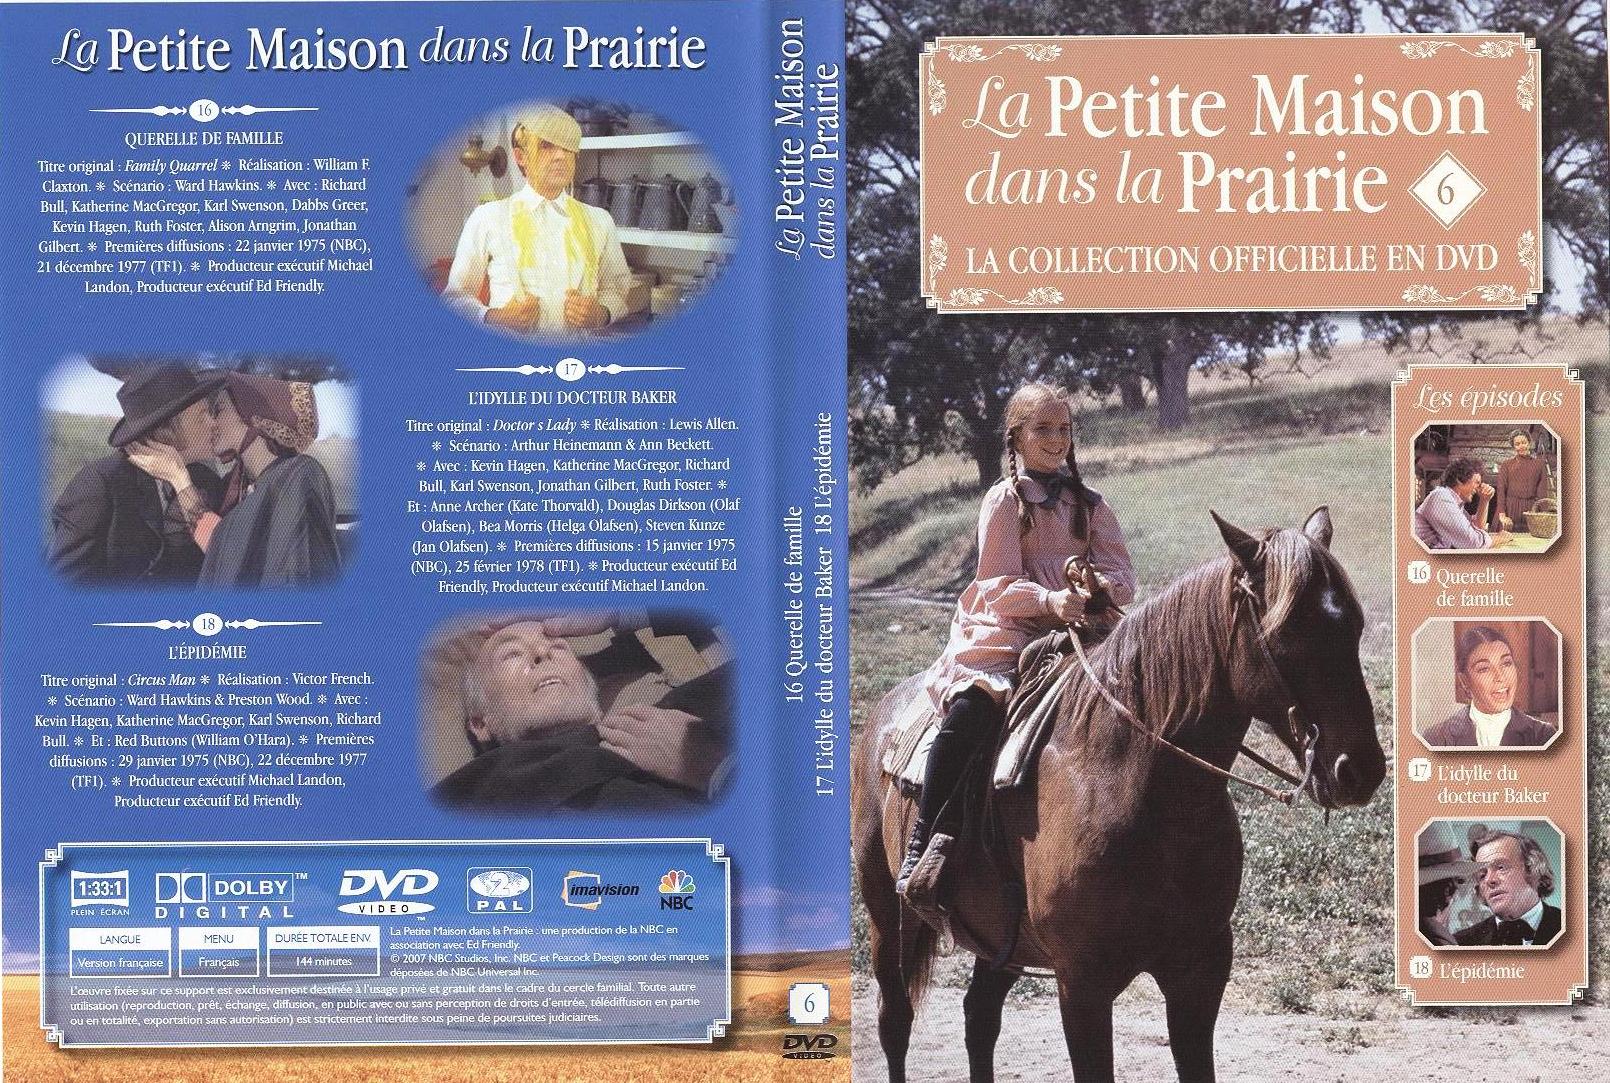 Jaquette DVD La petite maison dans la prairie La Collection vol 06